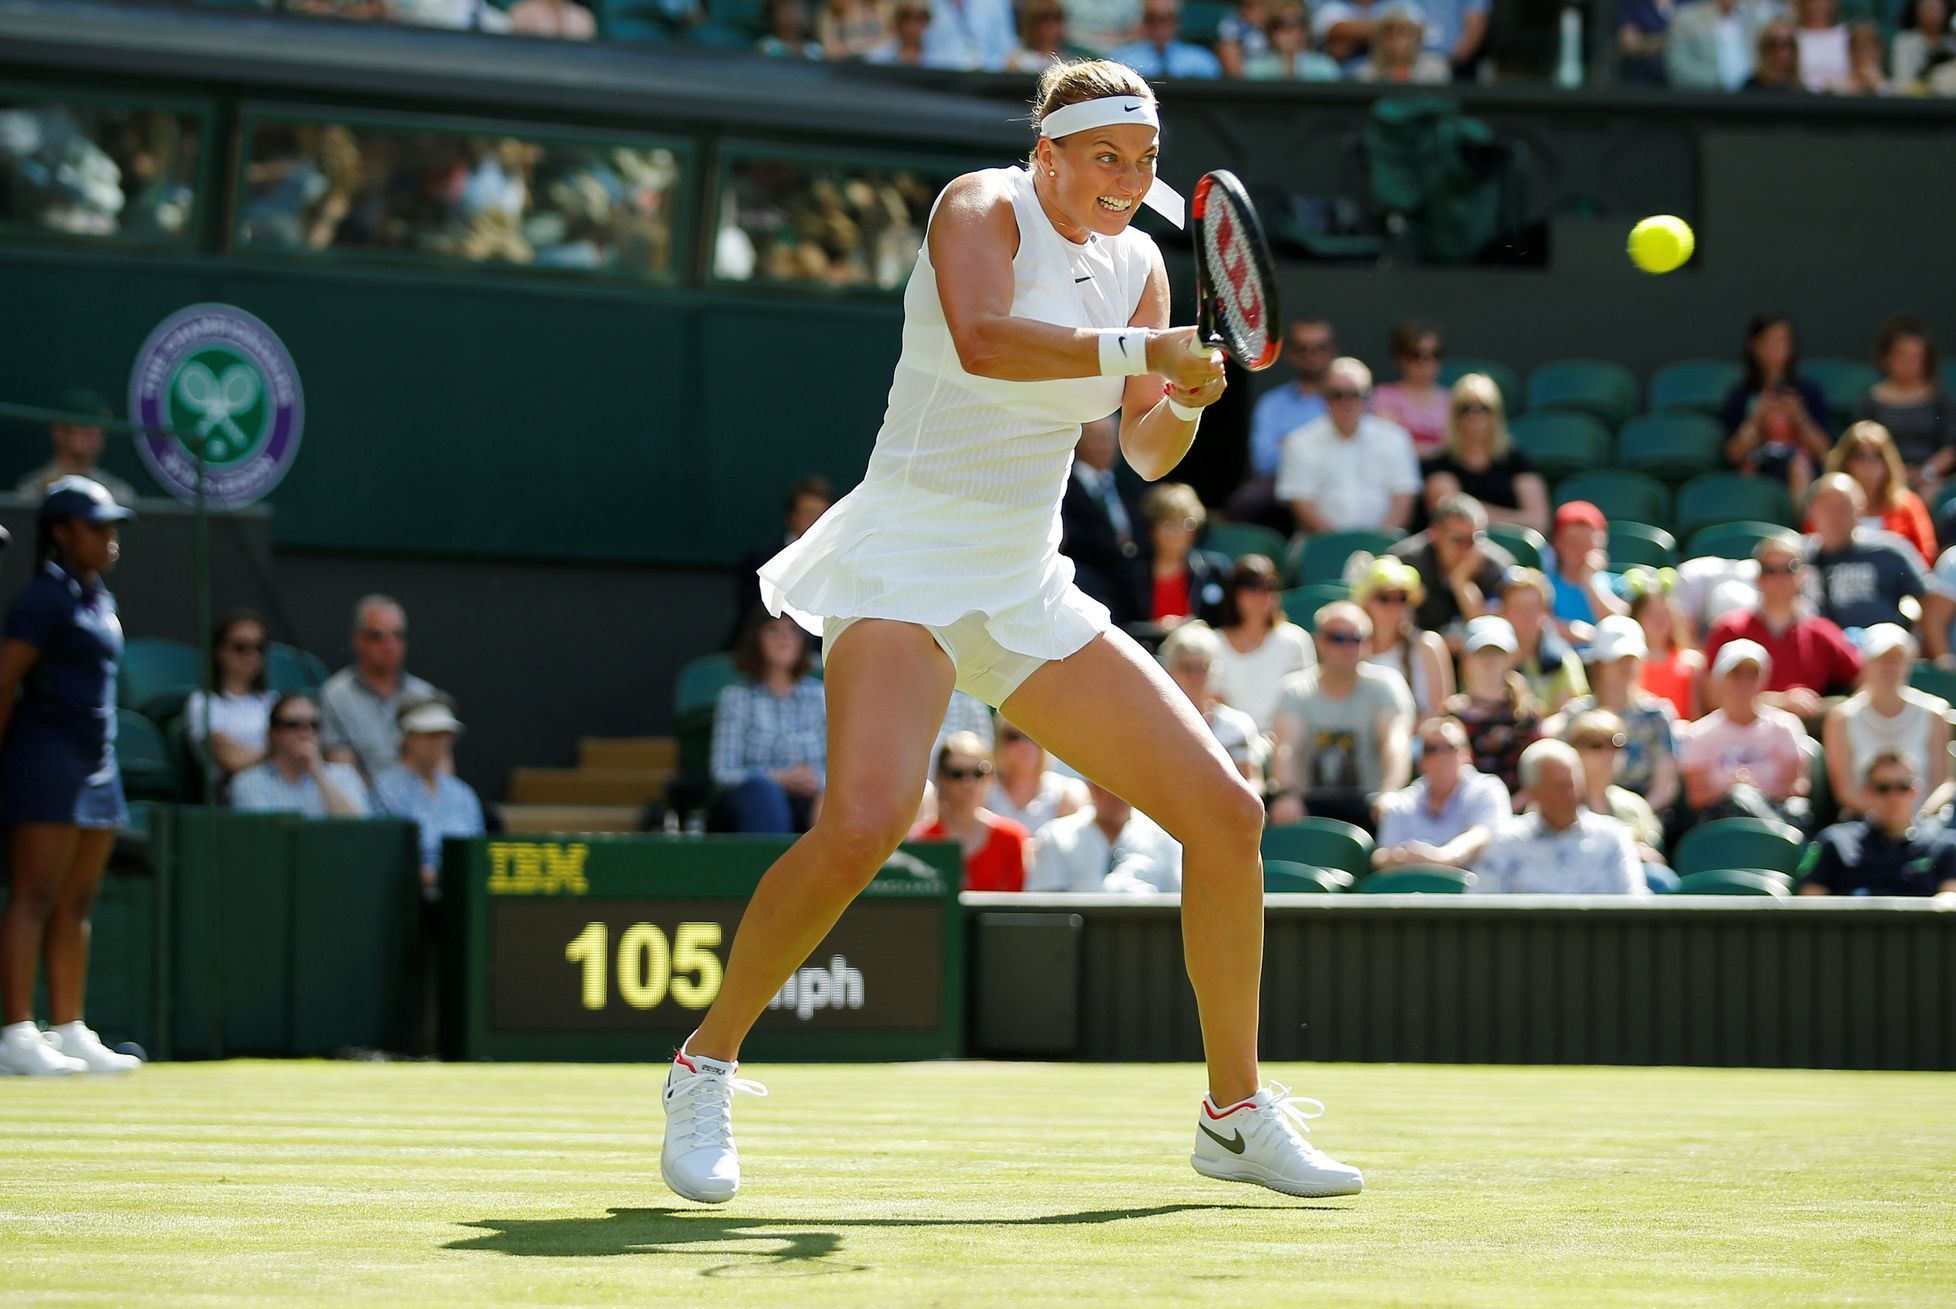 Petra Kvitová na Wimbledonu.